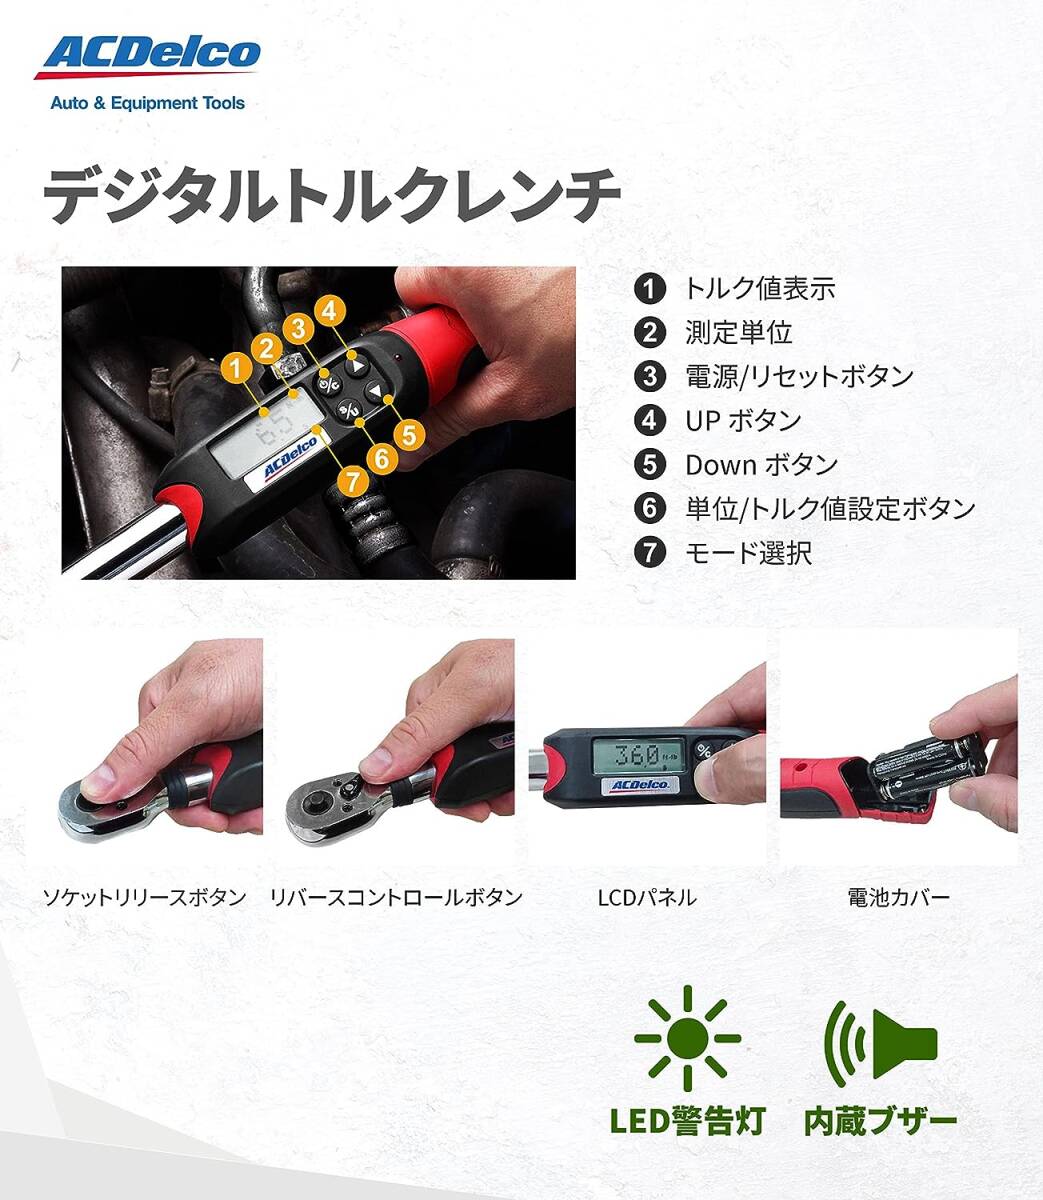 【新品】ACDelco 1/2” (12.7mm) デジタルトルクレンチ ARM607-4 ロング トルク値20-200Nm 警告灯内蔵 自動車修理 ACデルコ 日本語取説付きの画像3